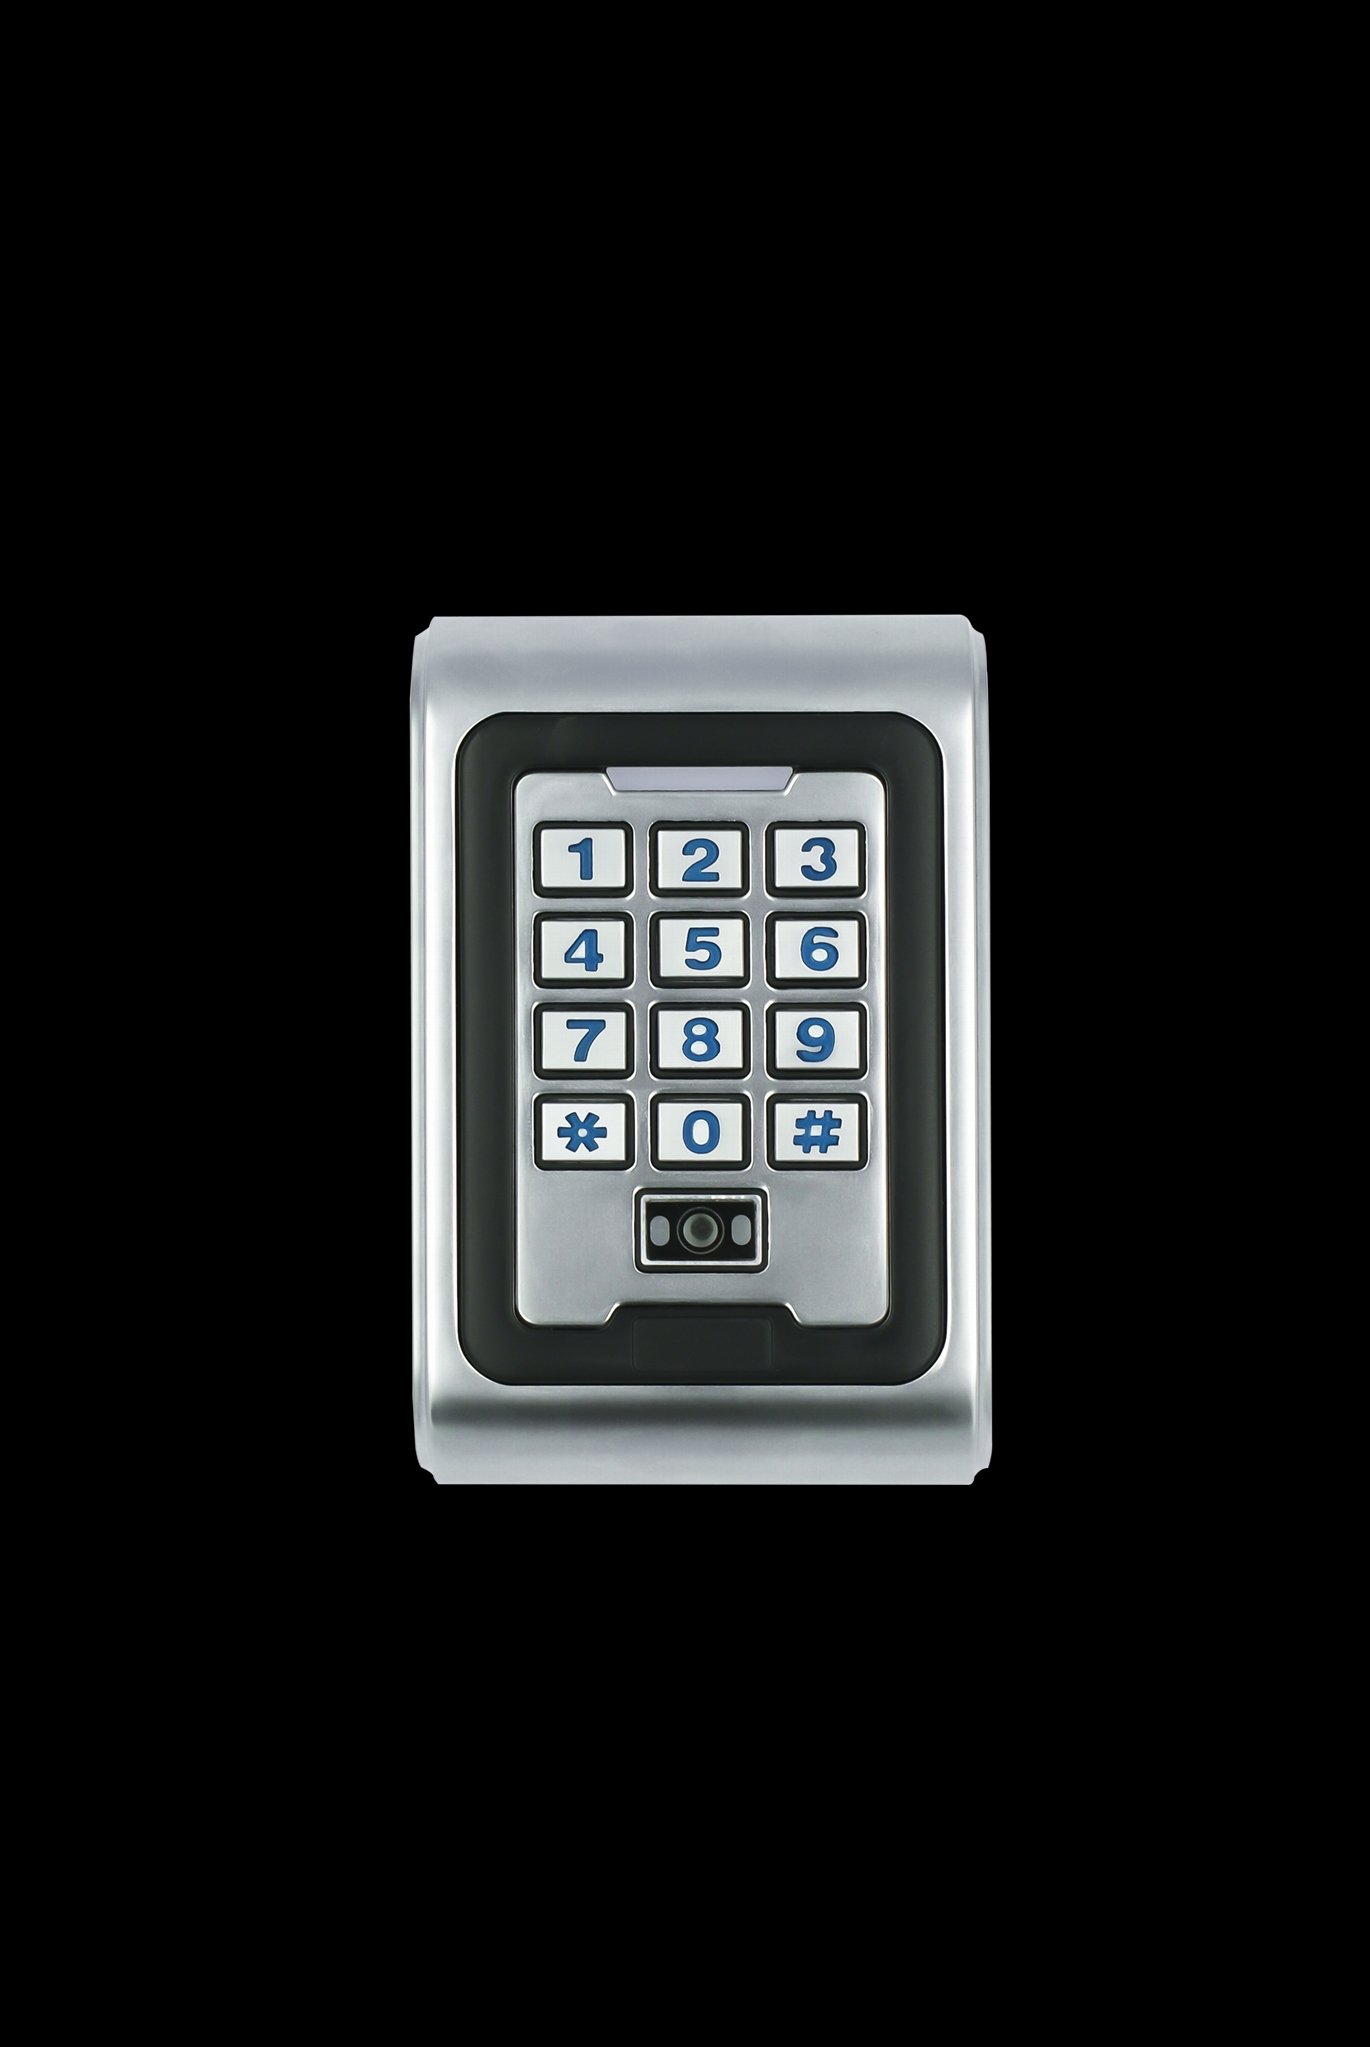 Metal Case Qr Code Door Controller Dynamic 2D qr bar code Door Access Controller 2